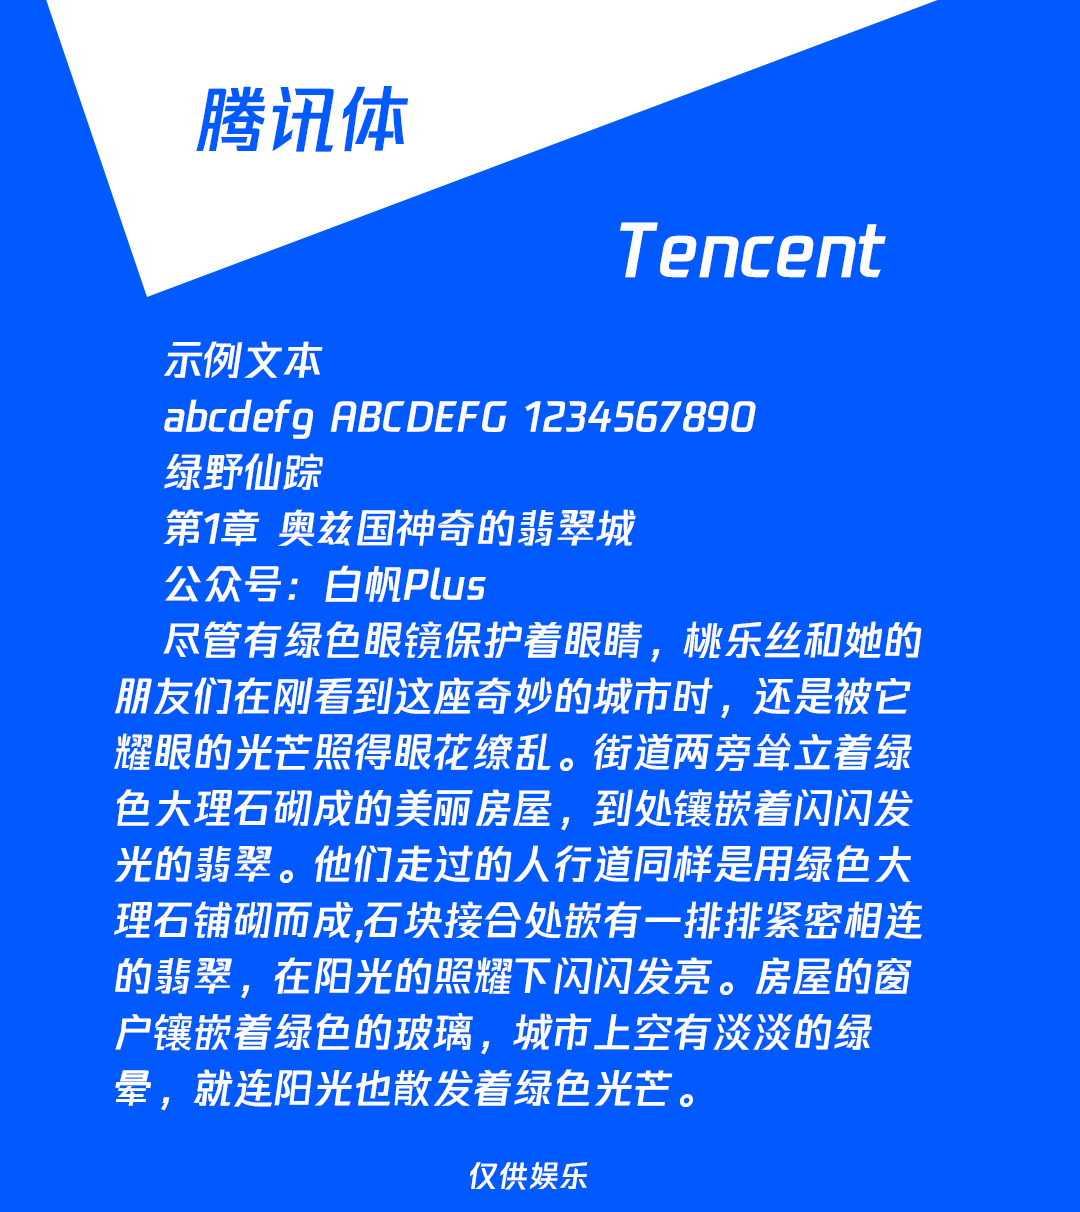 TencentFont.png